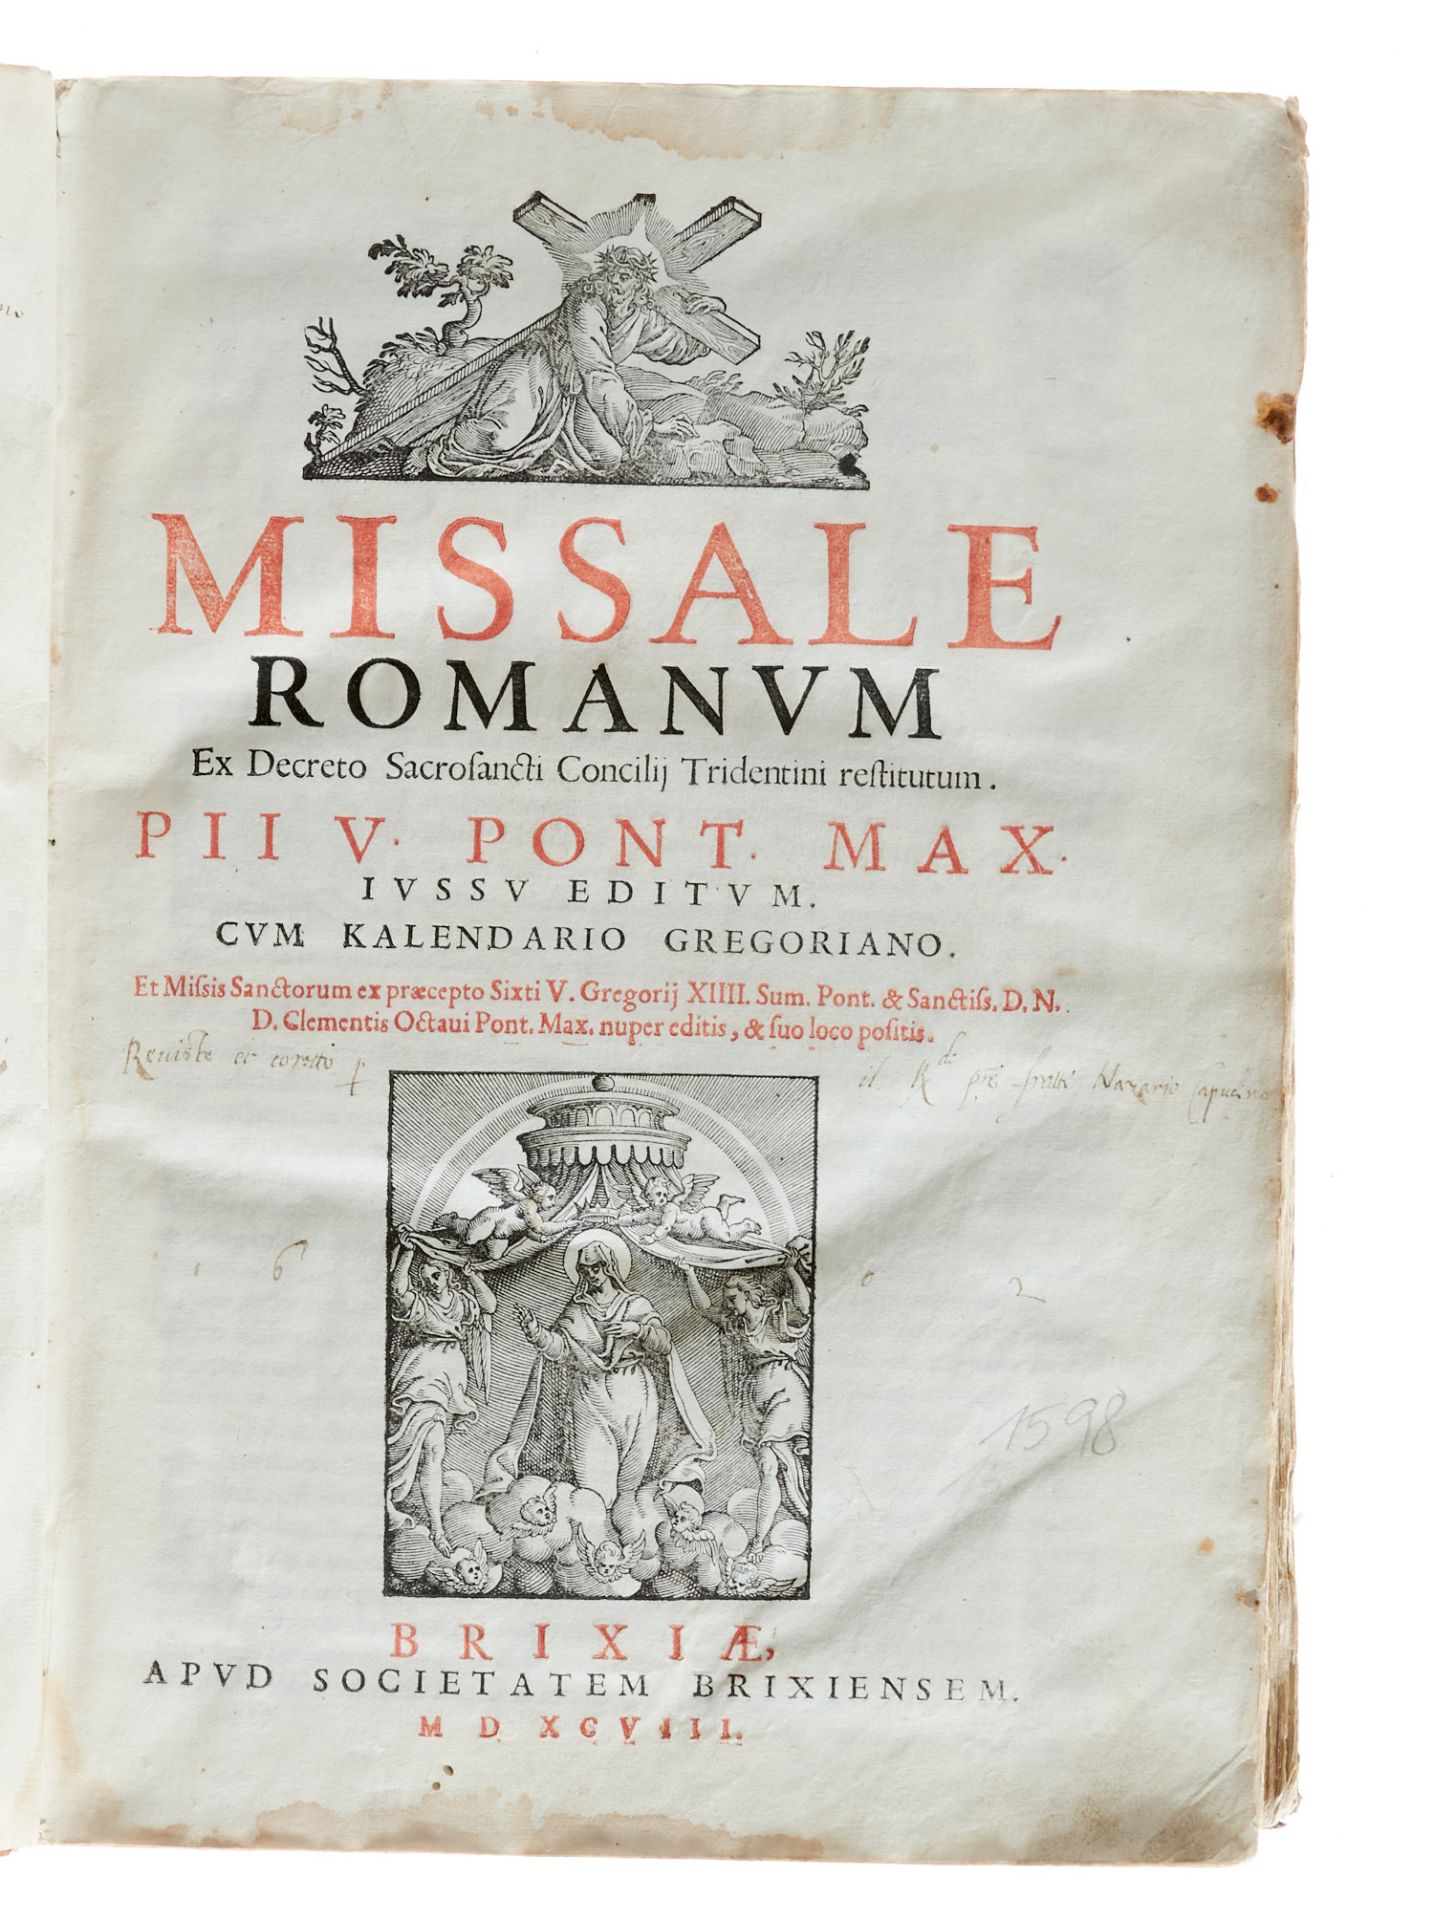 Liturgie - Missale Romanum - Image 2 of 6